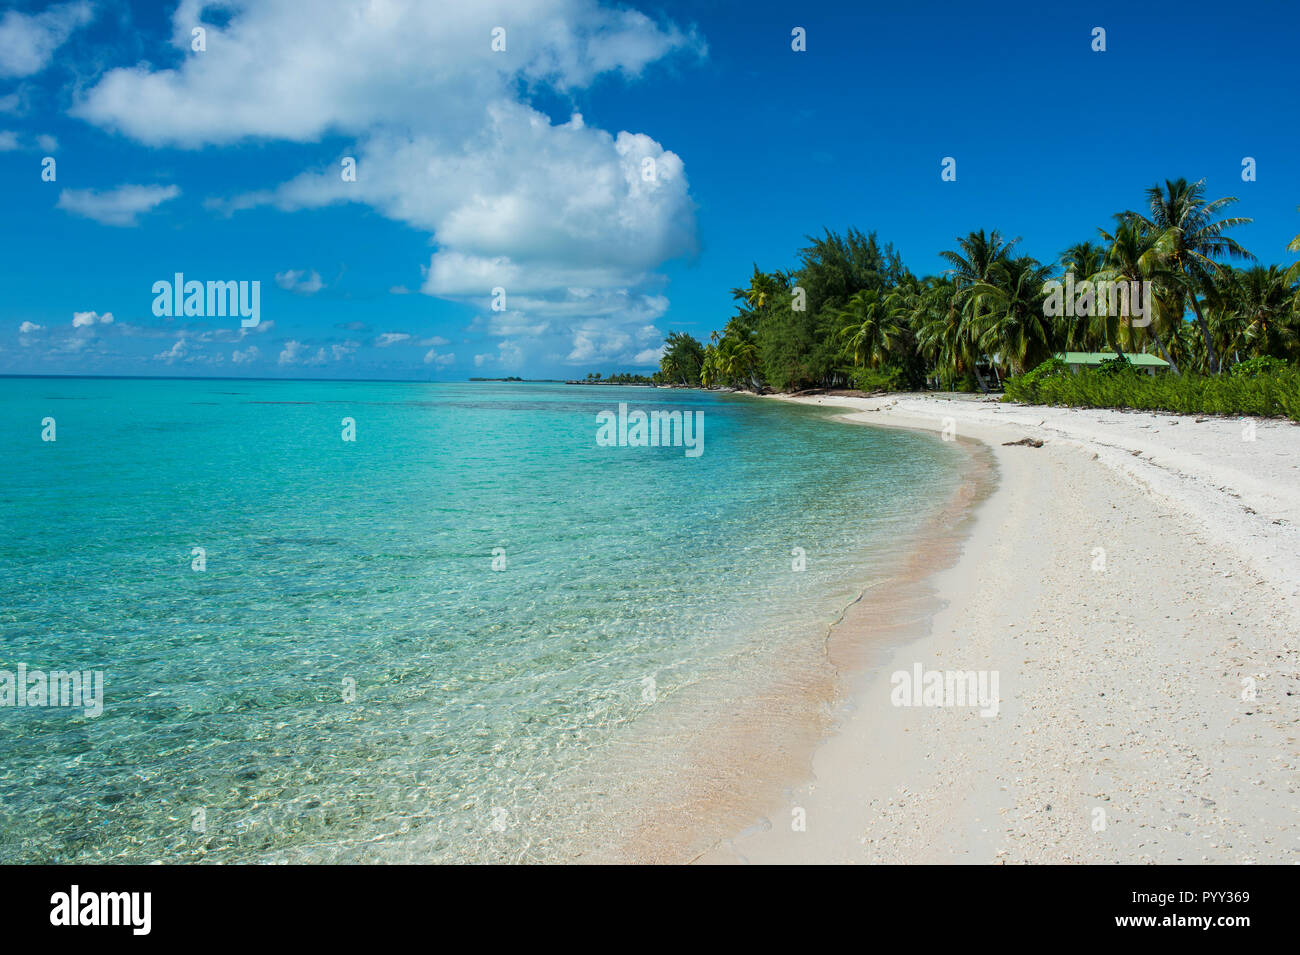 Plage de sable blanc bordée de cocotiers dans les eaux turquoises de Tikehau, Tuamotu, Polynésie Française Banque D'Images